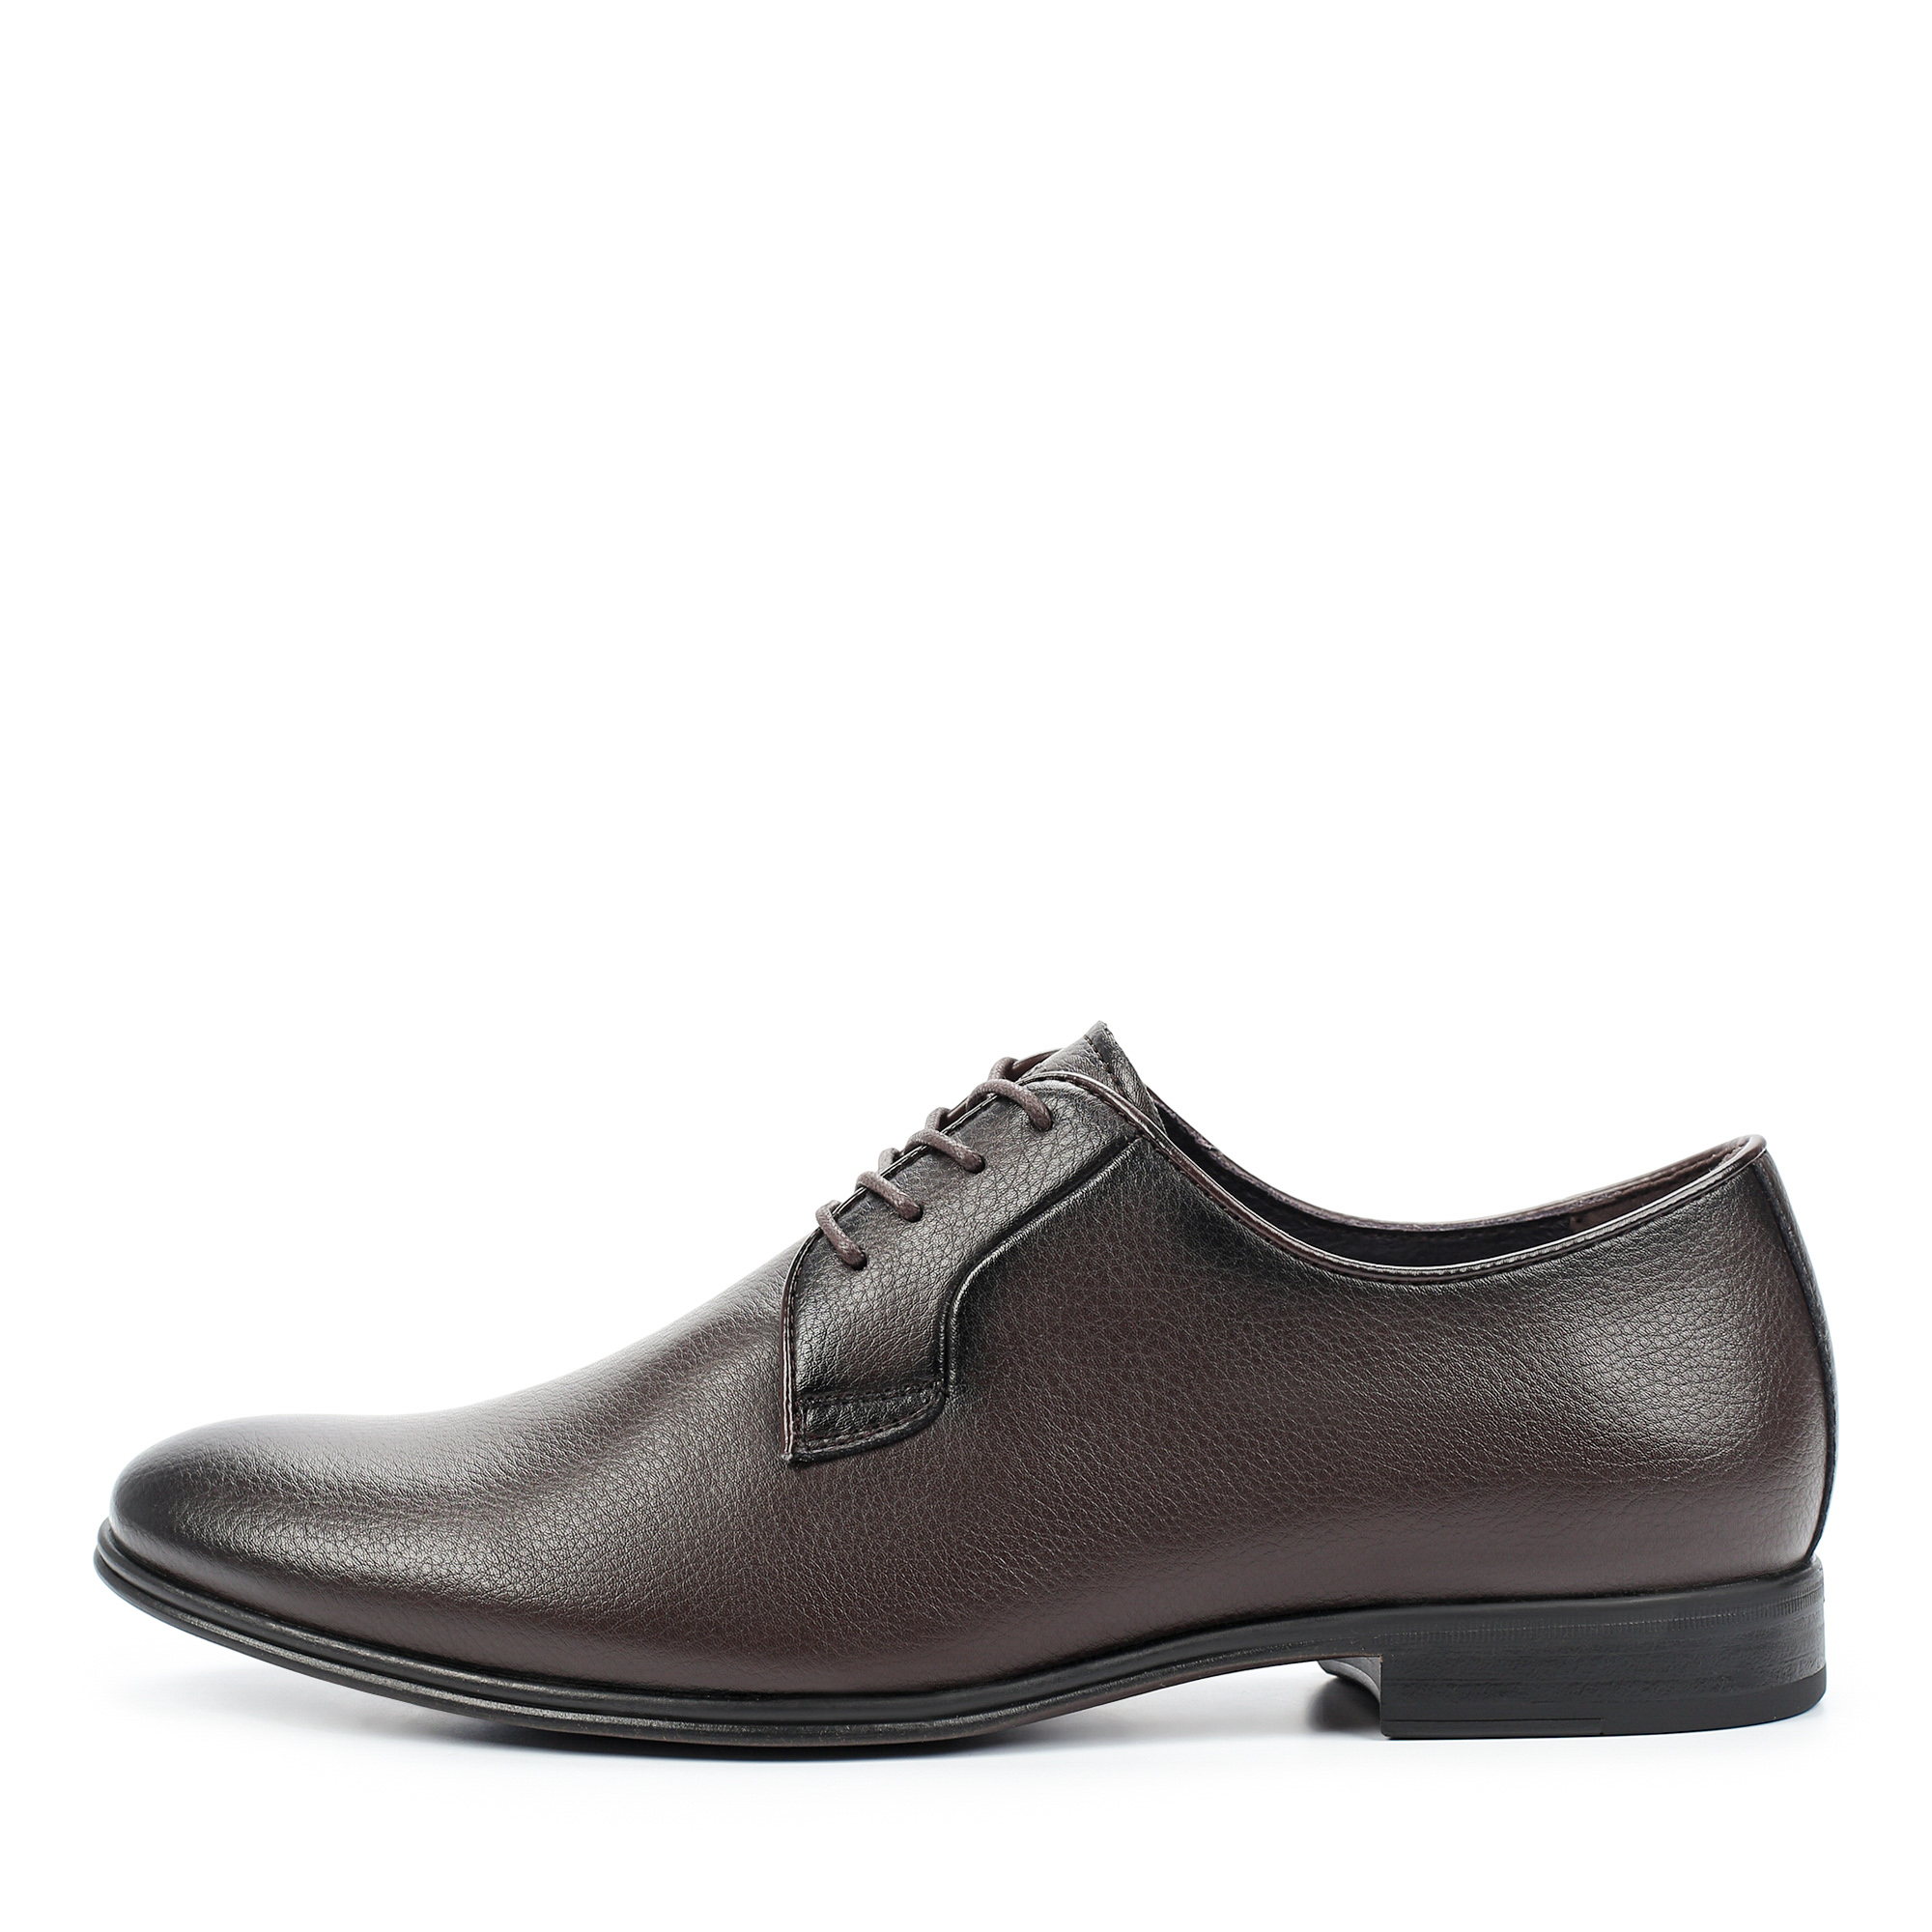 Туфли/полуботинки Thomas Munz 073-747A-2109, цвет темно-коричневый, размер 42 - фото 1